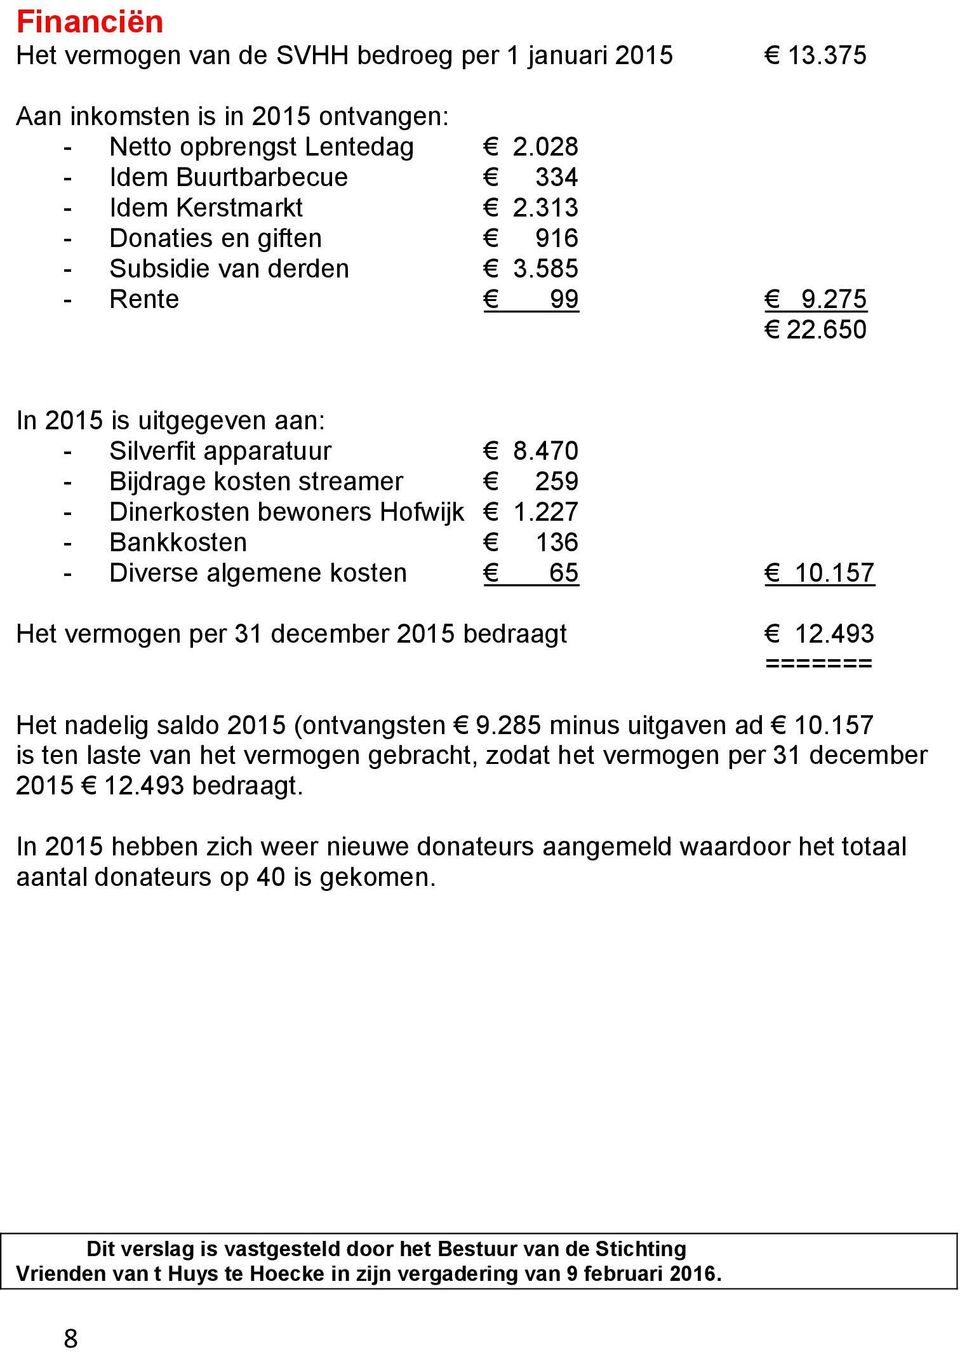 470 - Bijdrage kosten streamer 259 - Dinerkosten bewoners Hofwijk 1.227 - Bankkosten 136 - Diverse algemene kosten 65 10.157 Het vermogen per 31 december 2015 bedraagt 12.